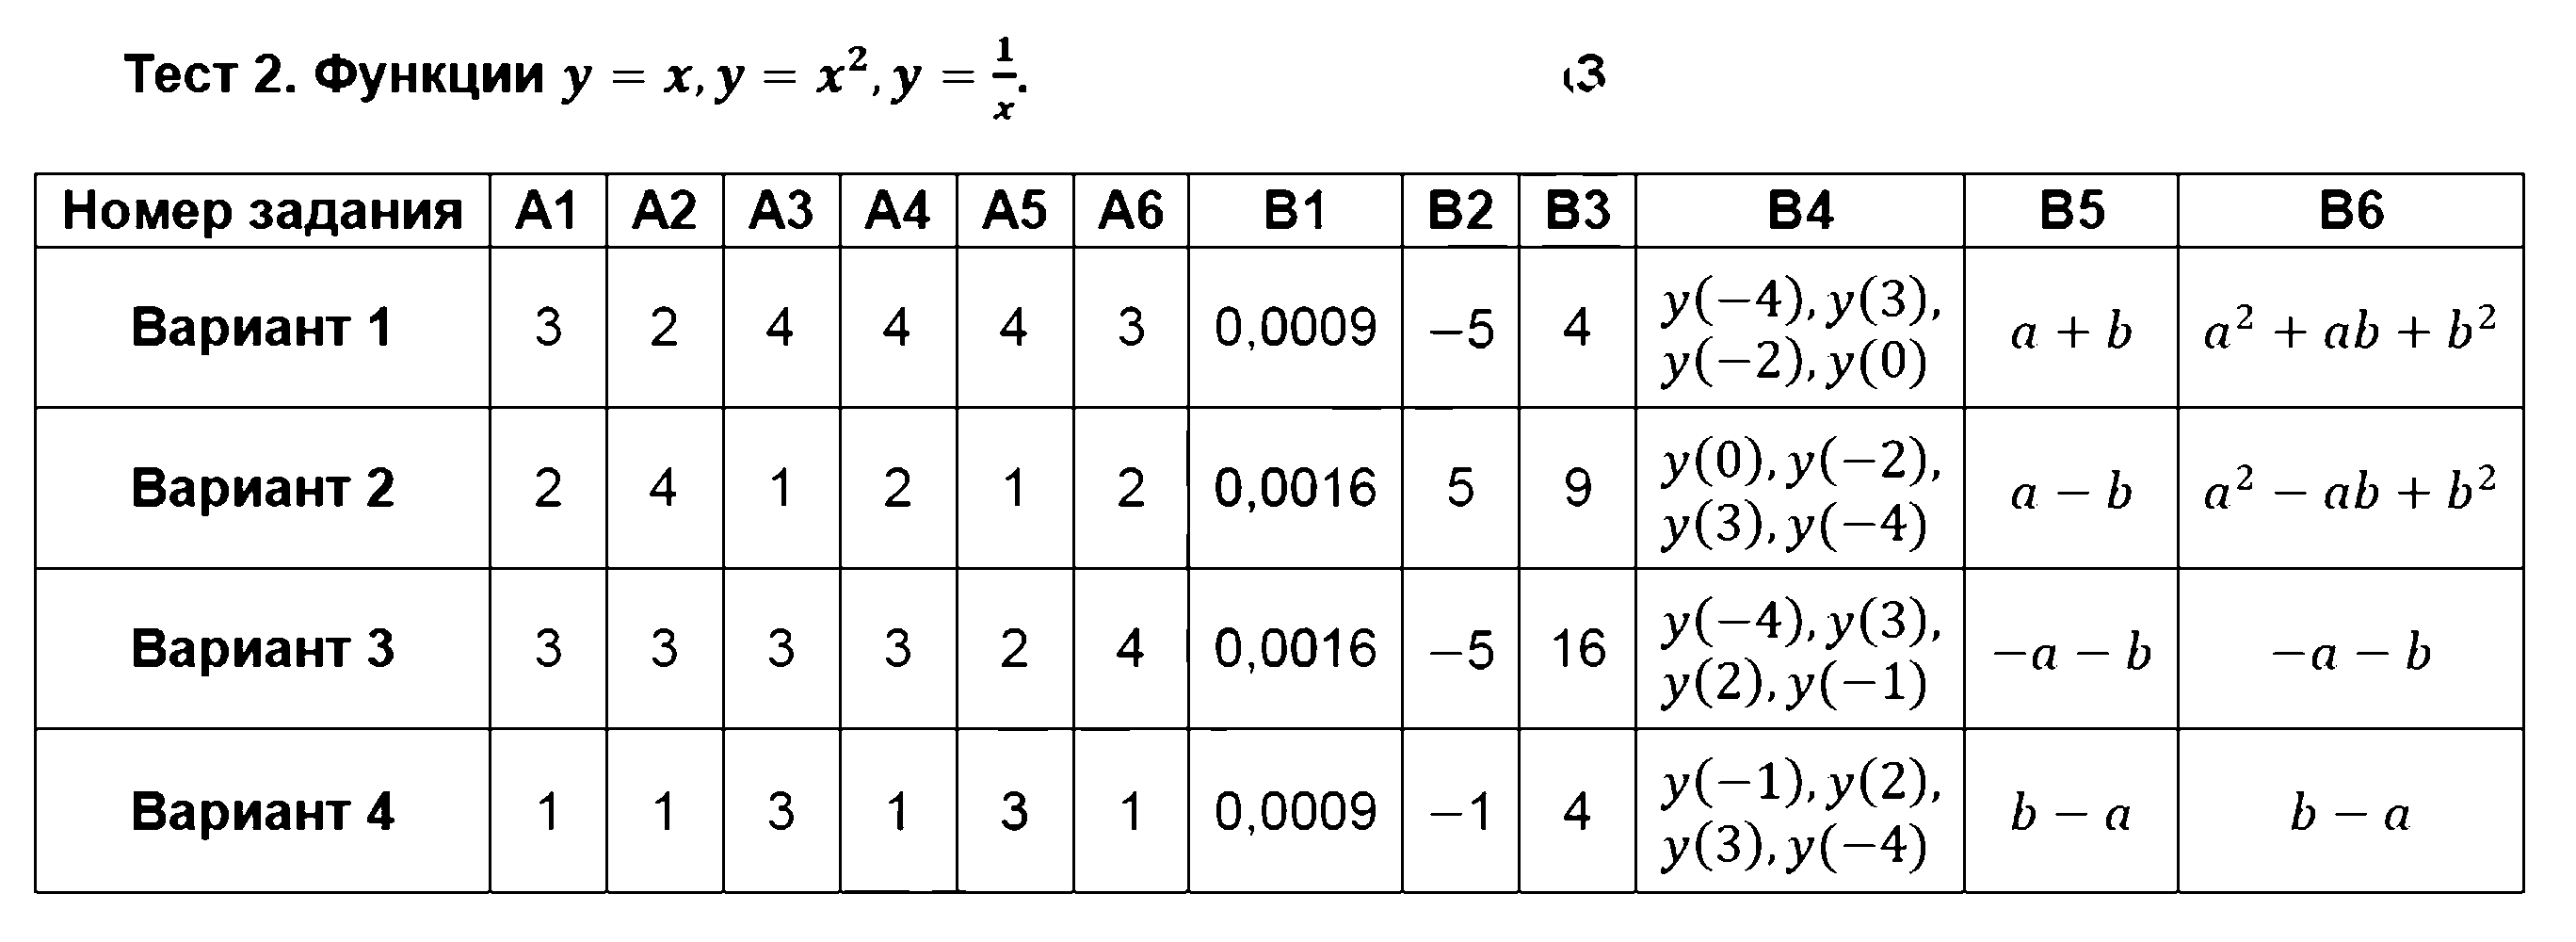 ГДЗ Алгебра 8 класс - Тест 2. Функции y=x